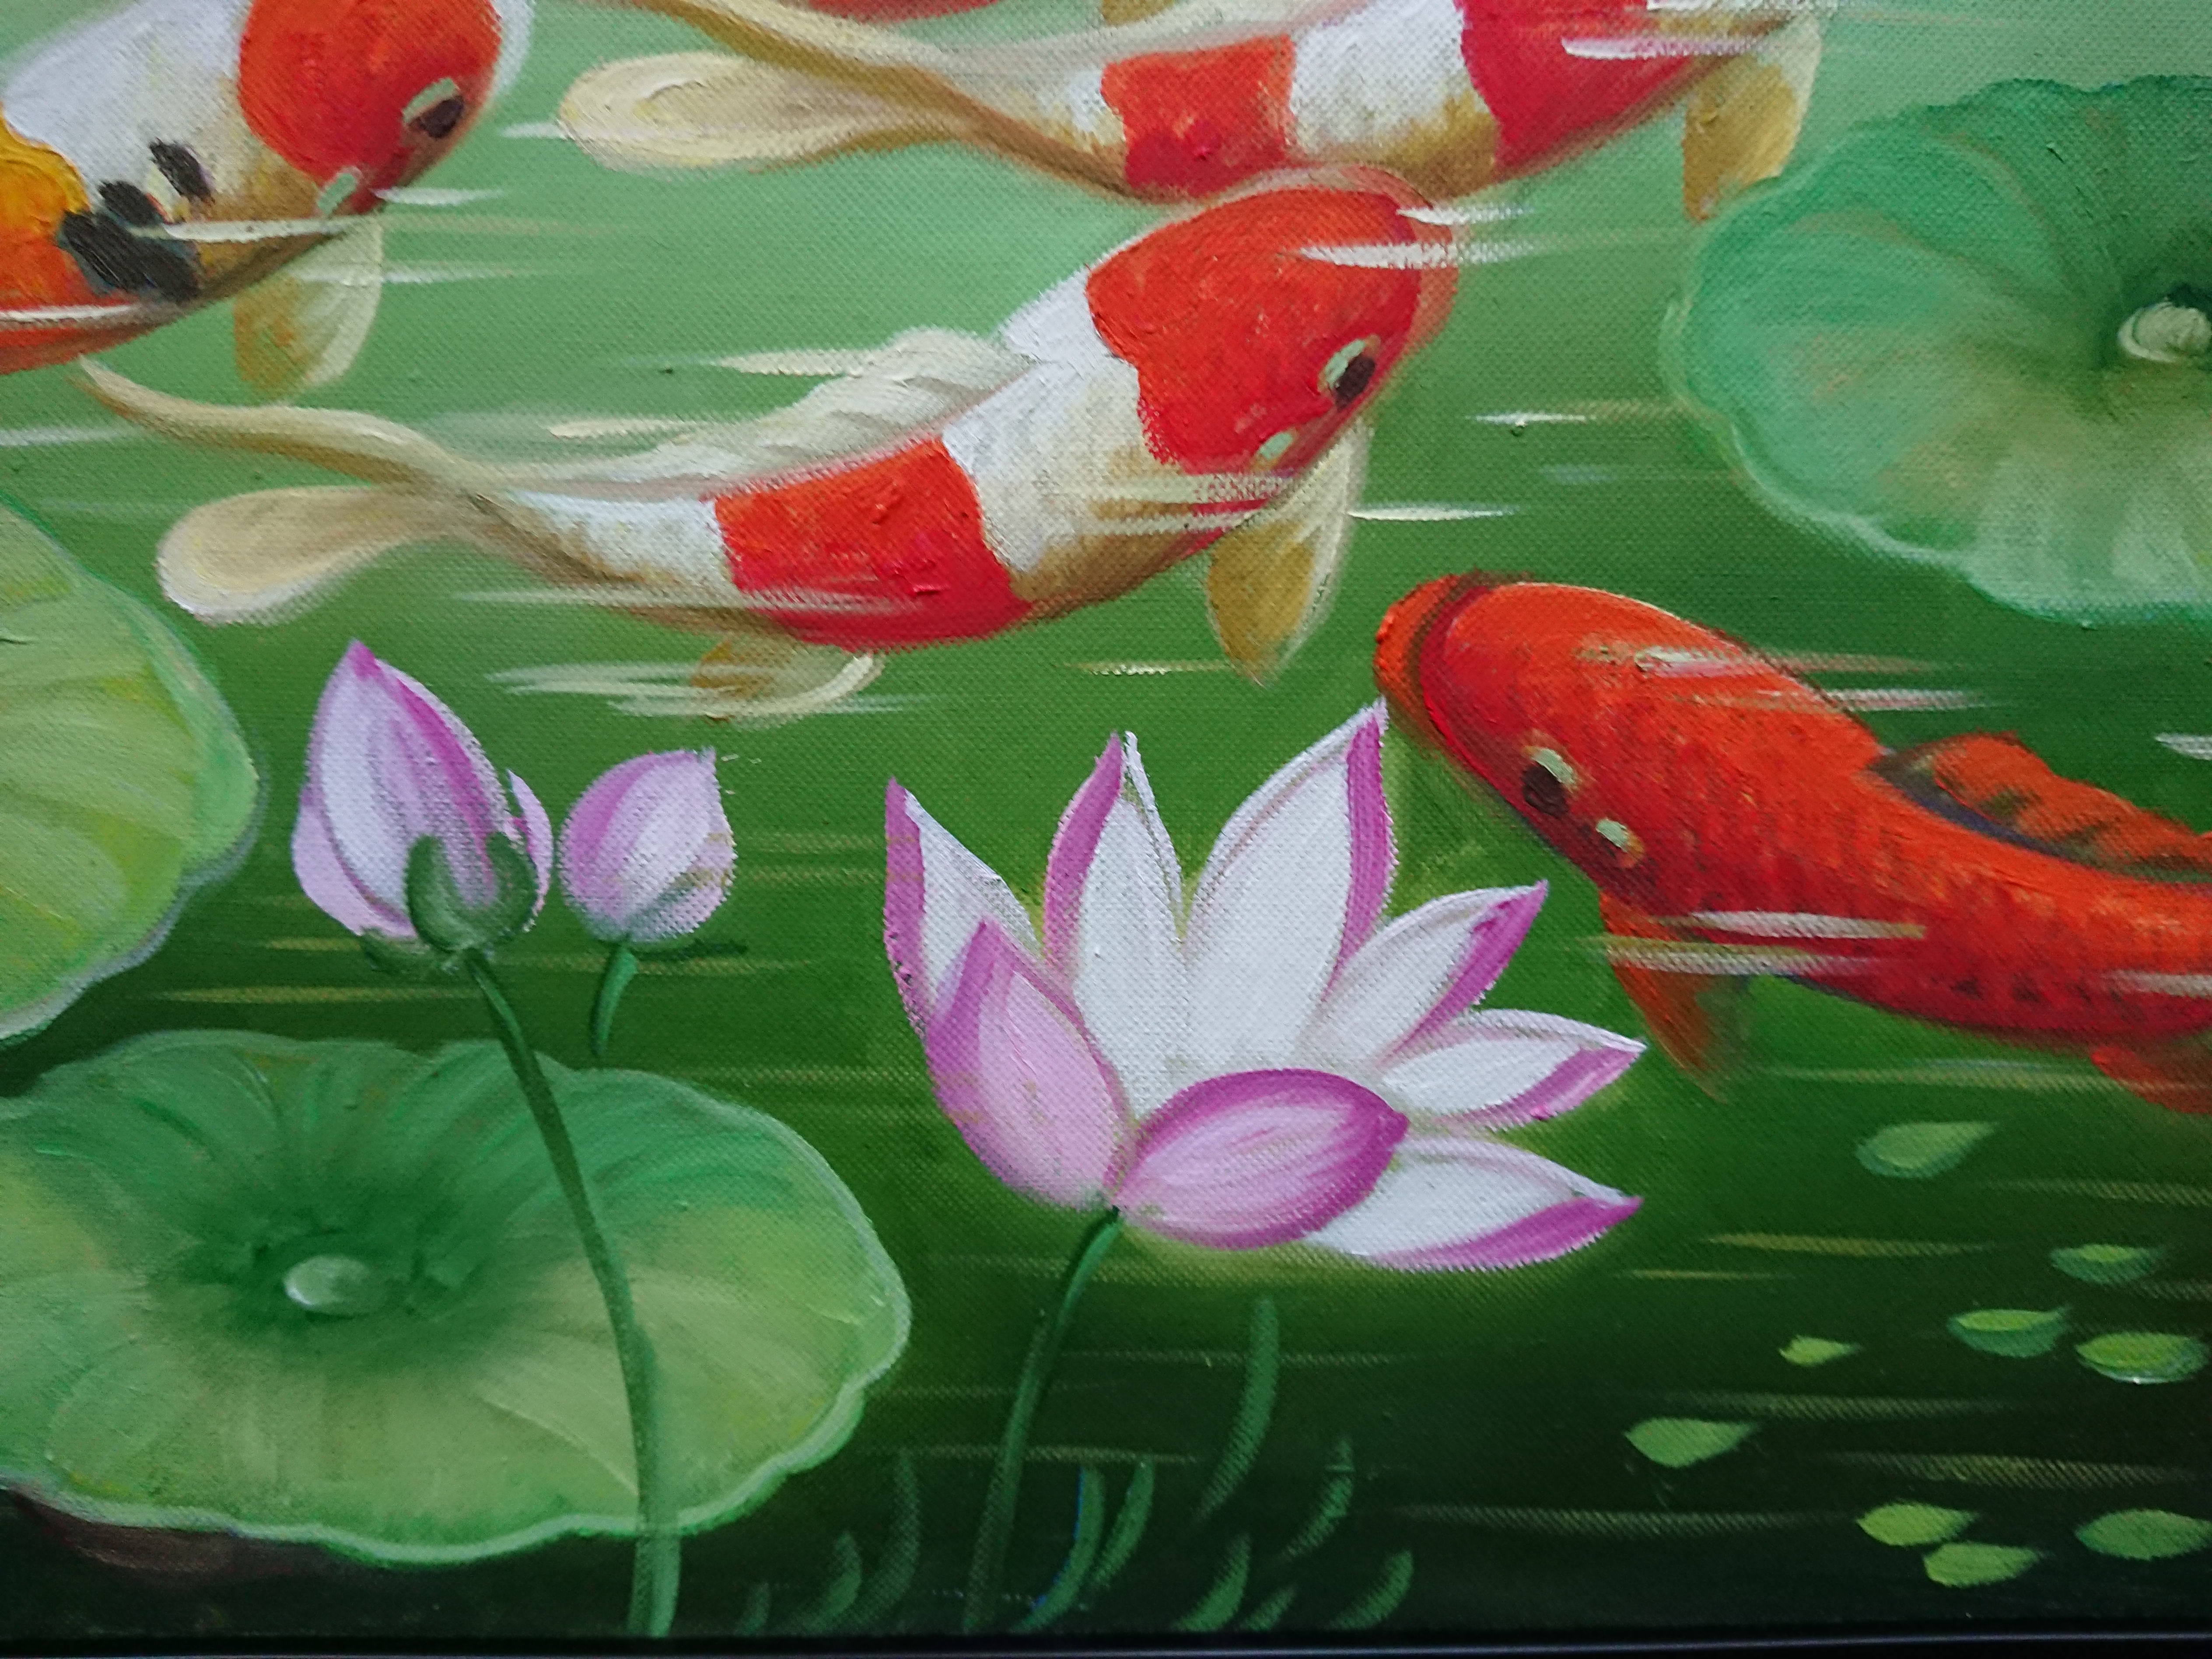 Tranh Sơn Dầu Vẽ Tay - Bầy Cá Chép 40x50cm